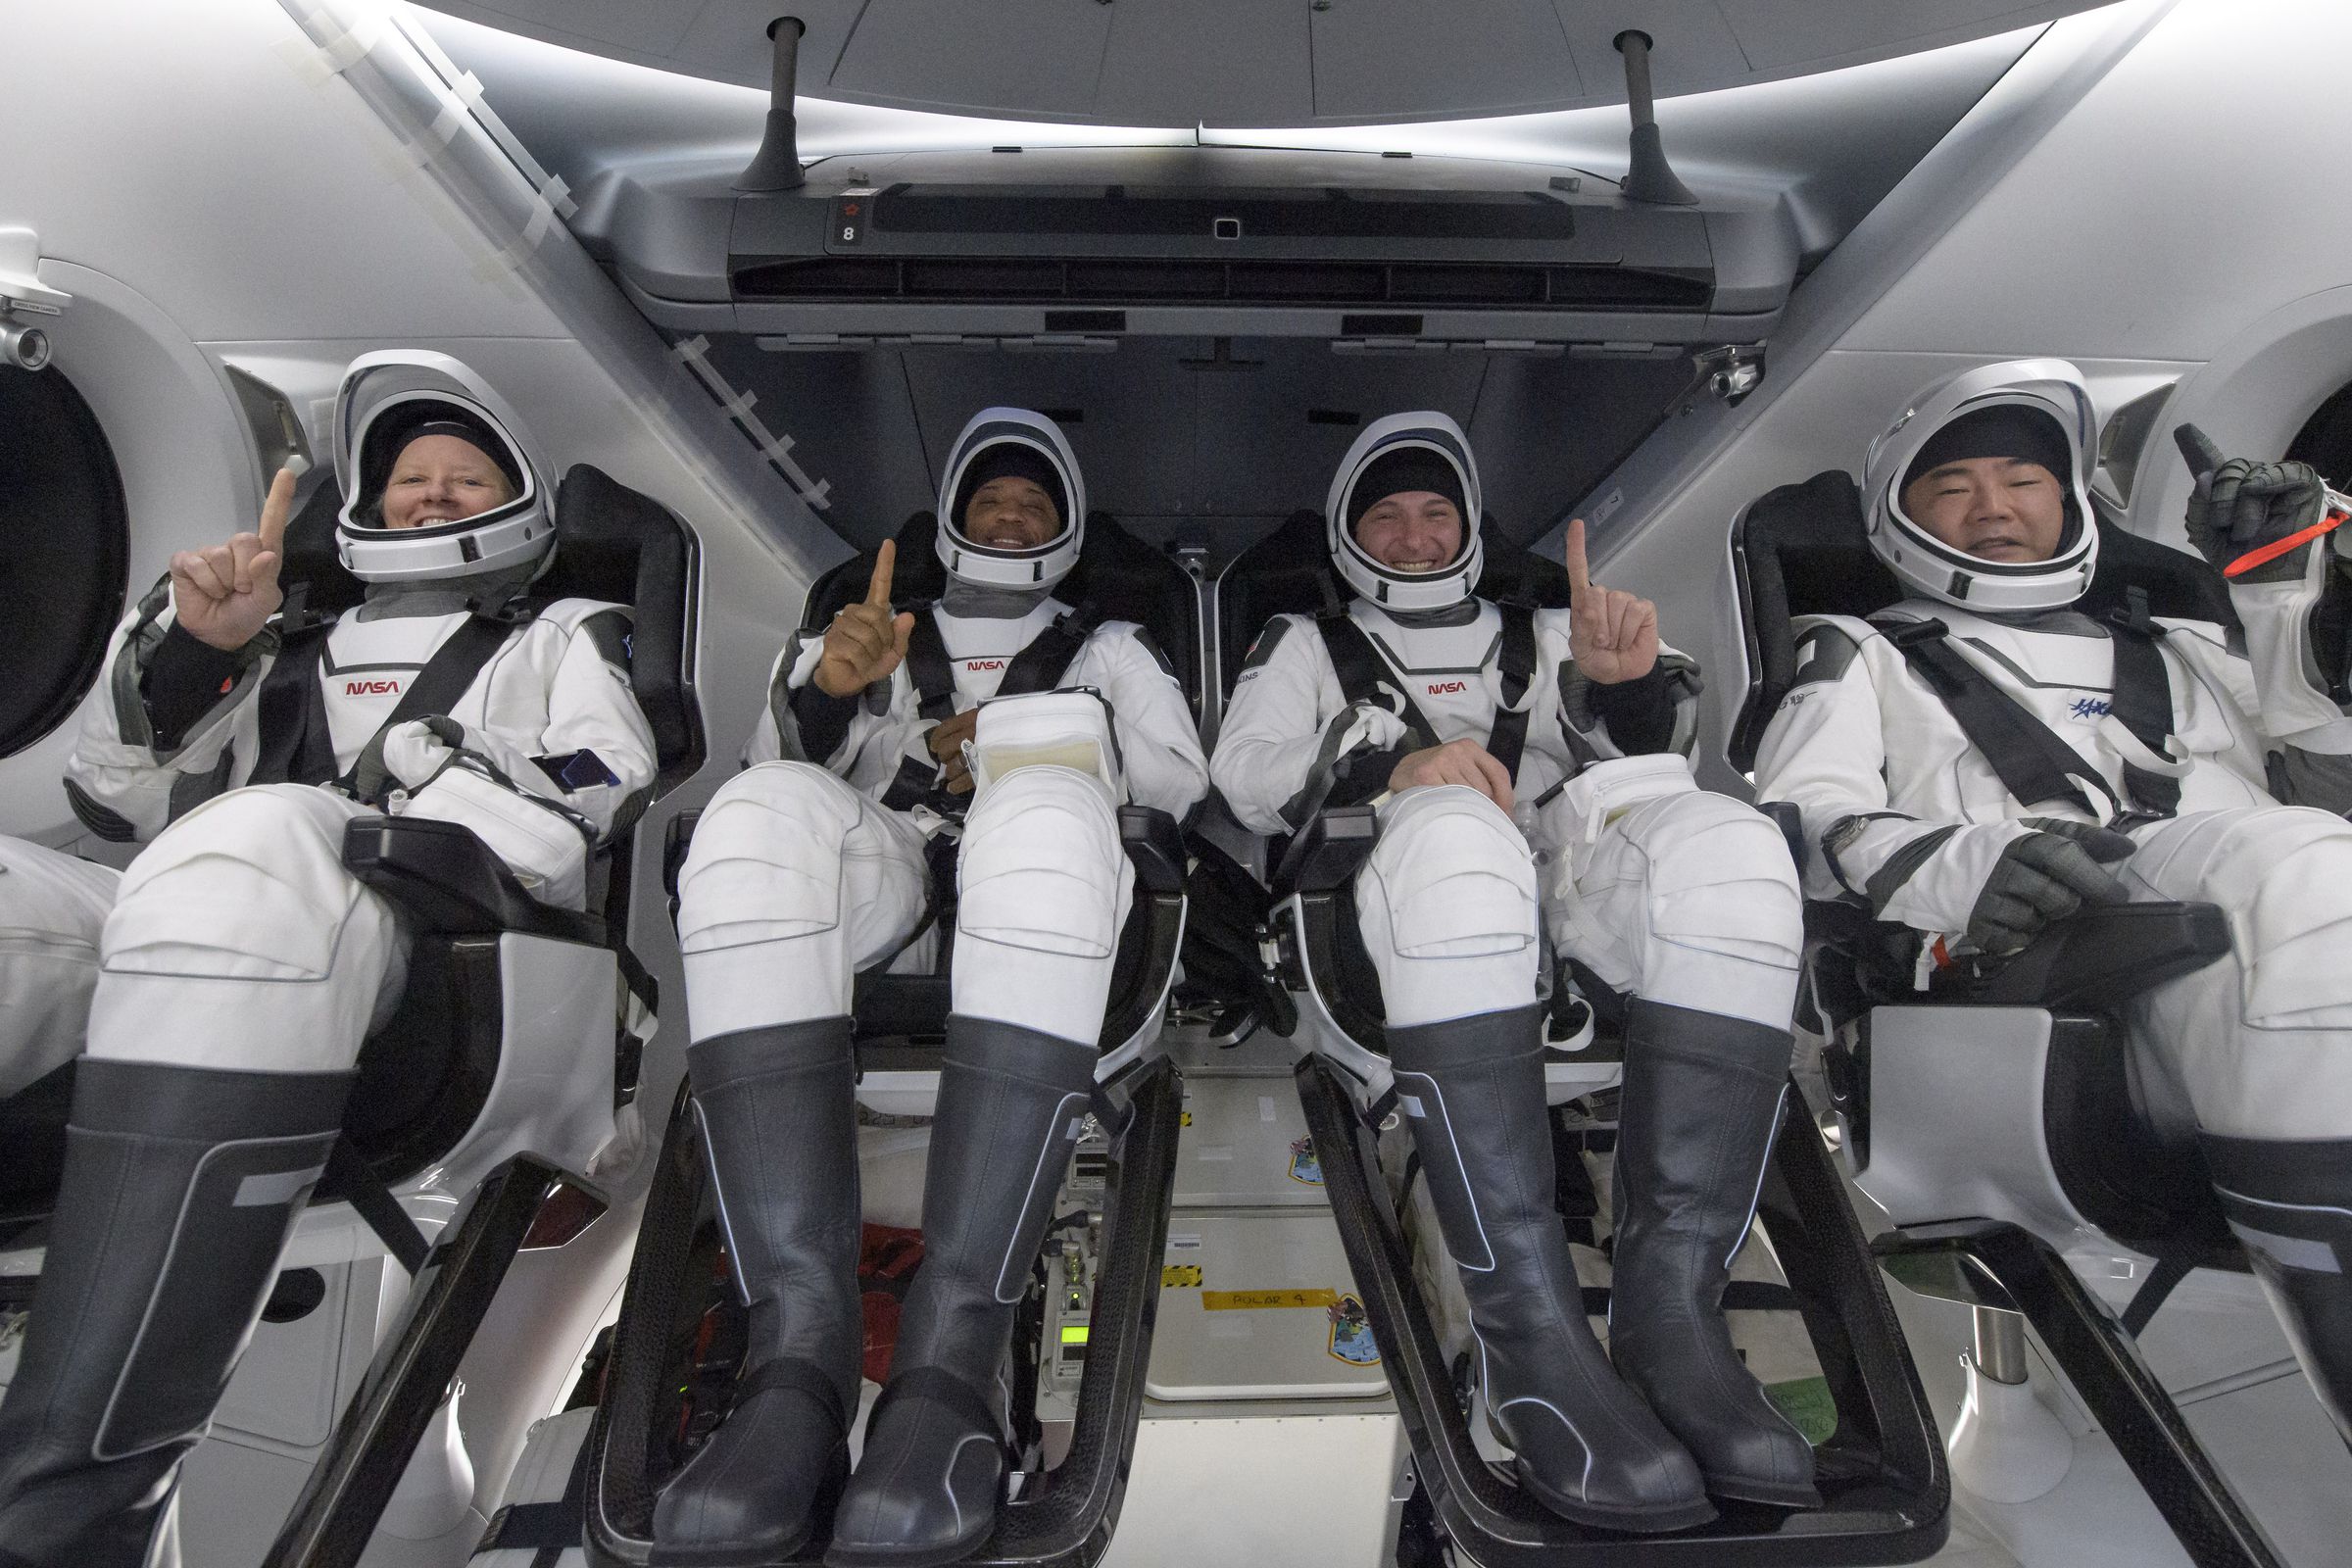 NASAs SpaceX Crew-1 Splashdown